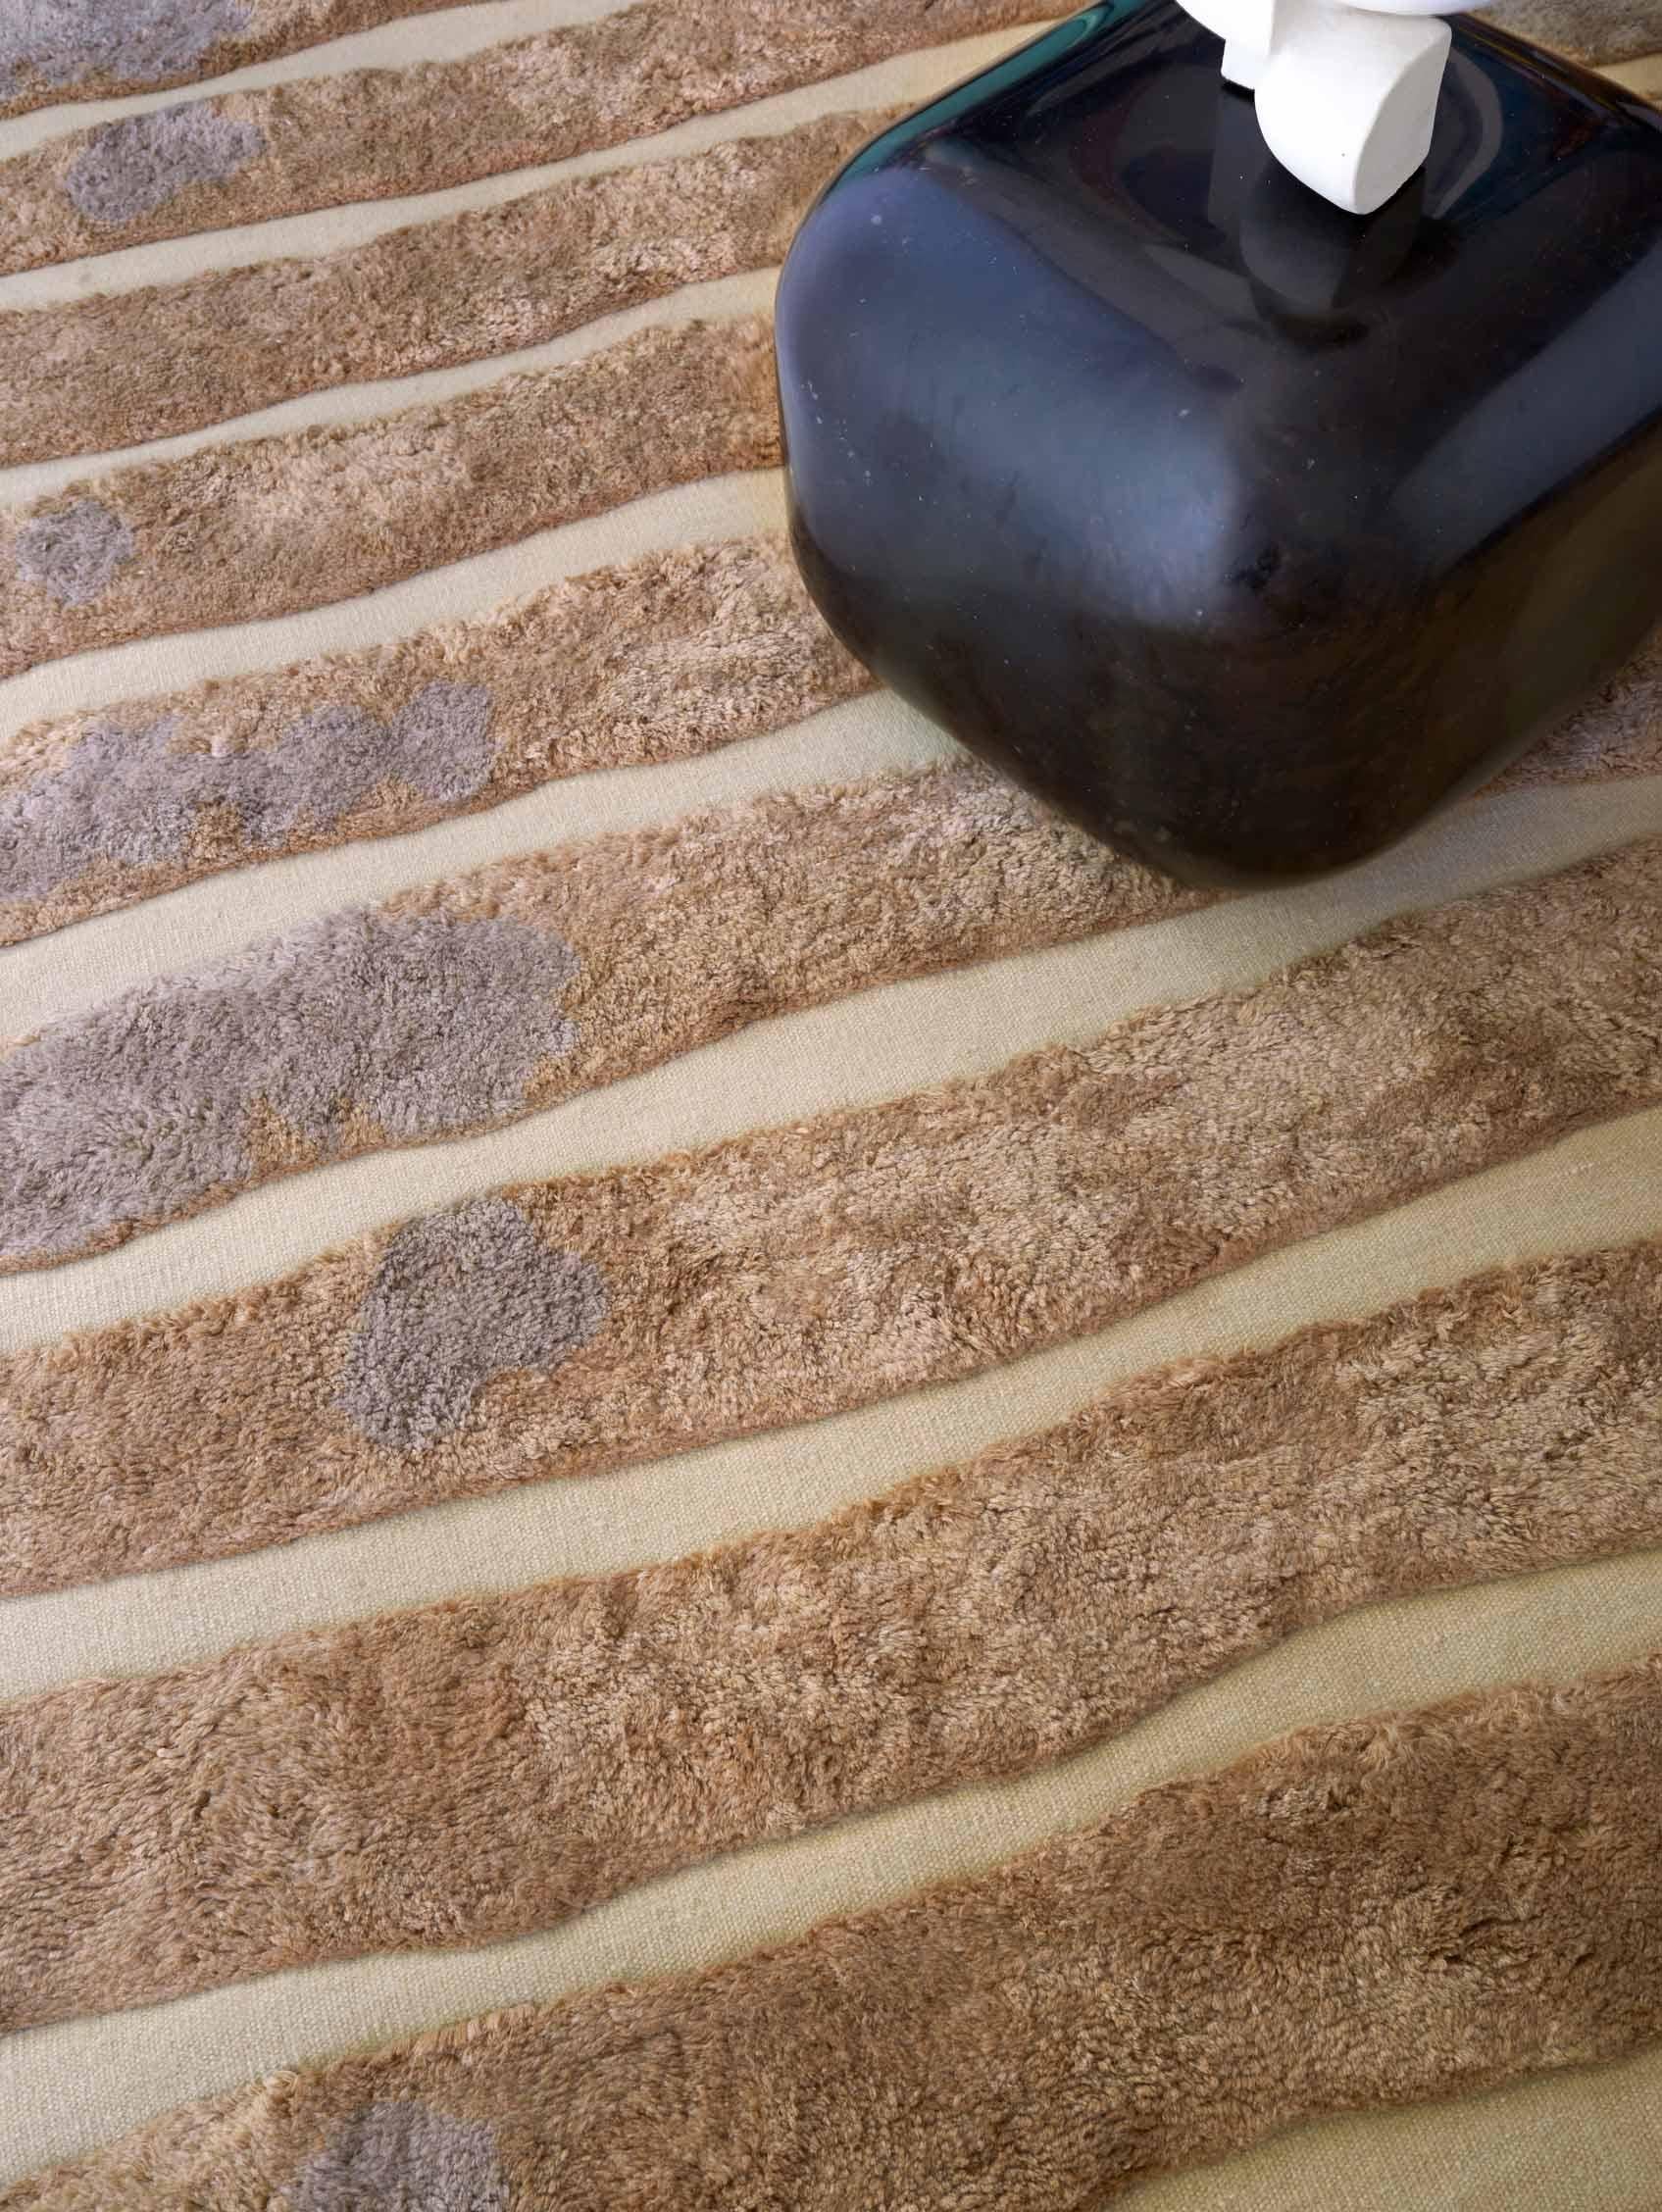 Motif du tapis : Bold Stripe - Sienna
MATERIAL : Poil de laine mérinos/ Laine de Nouvelle-Zélande tissée à plat
Qualité : Laine tissée à plat et poils marocains, poils de 10 mm, tissés à la main. 
Taille : 6'-0